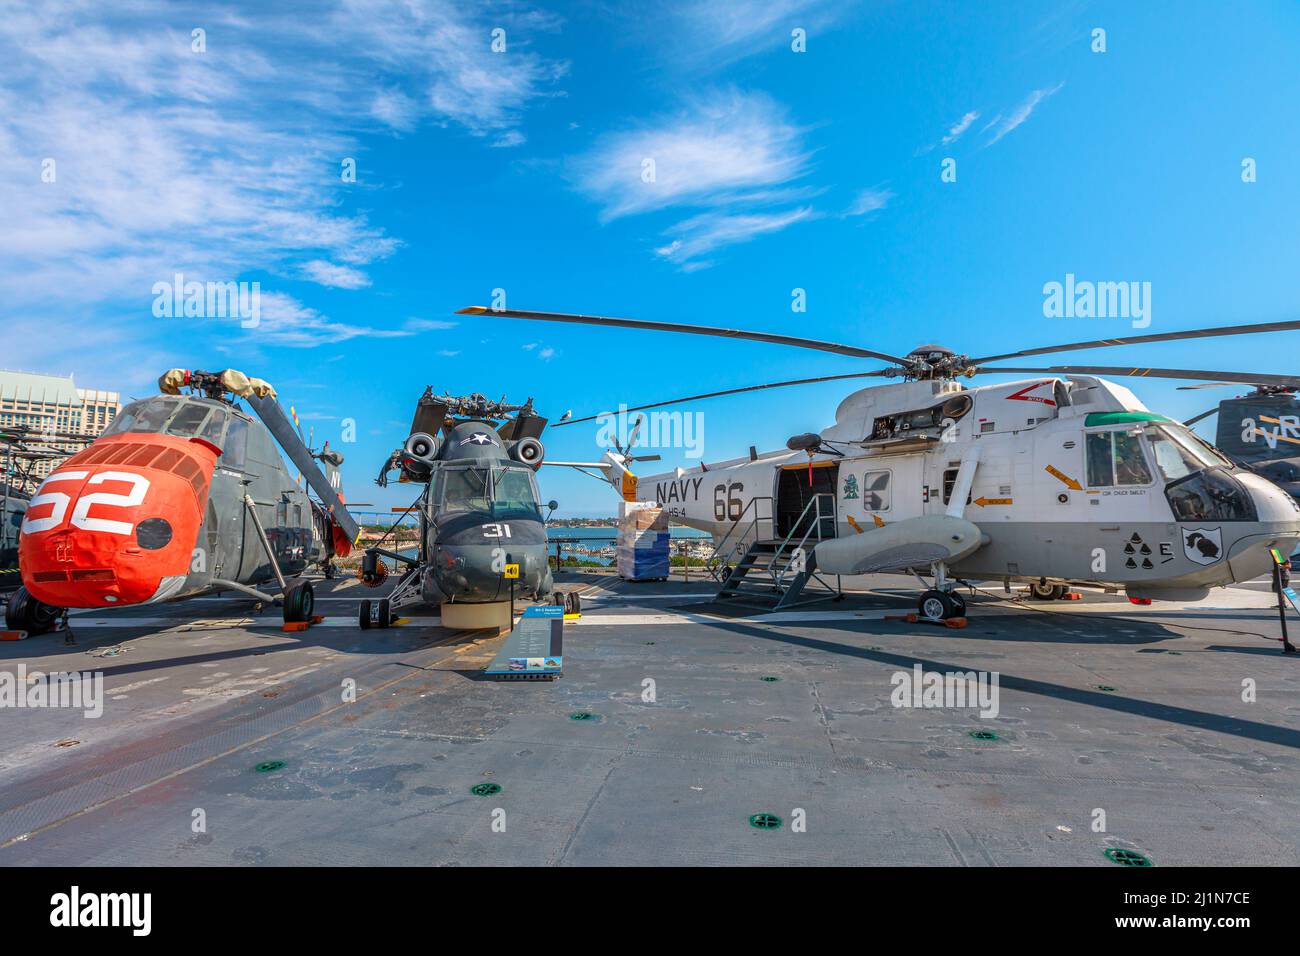 San Diego, Californie, États-Unis - JUILLET 2018 : hélicoptères sur le musée USS Midway Battleship Aviation. Banque D'Images